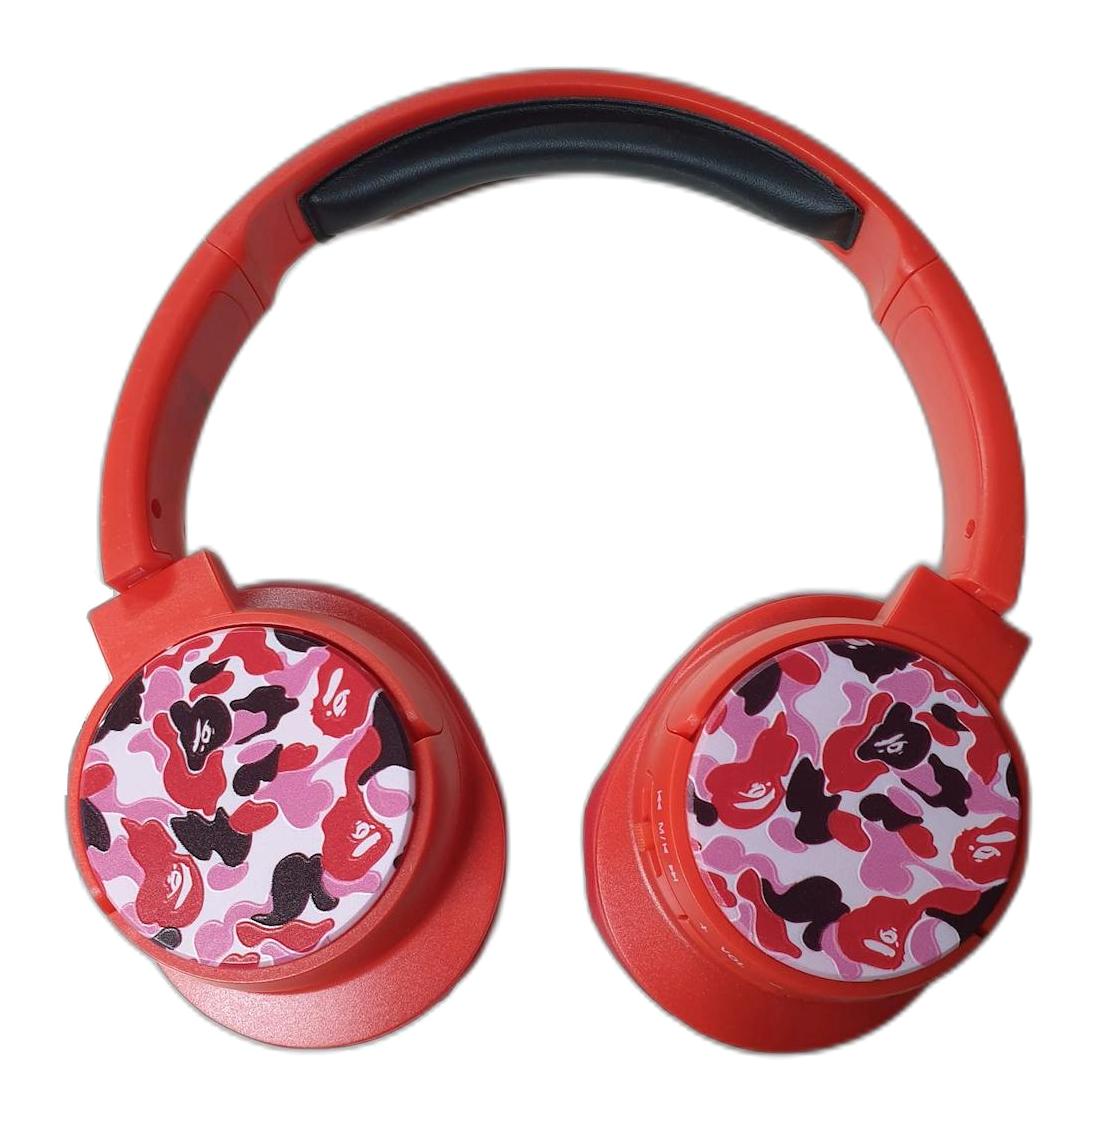 Karler KR7000 Kulak Üstü Bluetooth Kulaklık Kırmızı